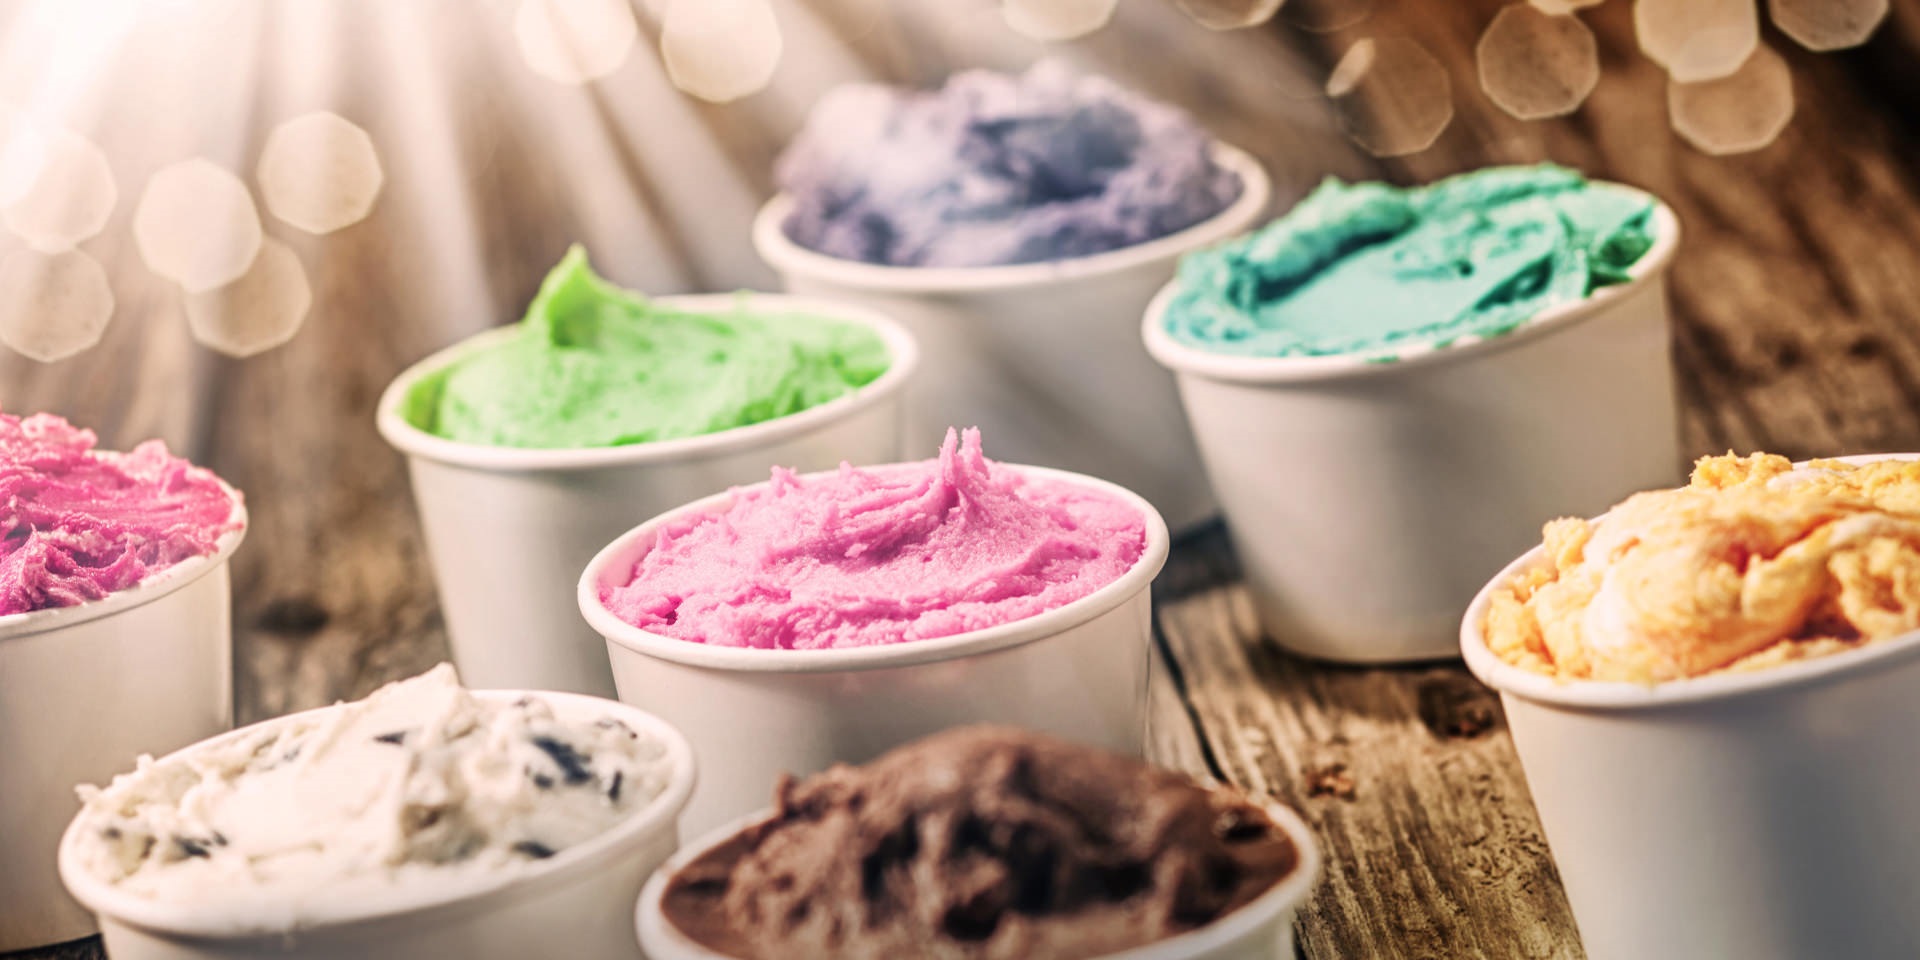 Ice Cream Innovation